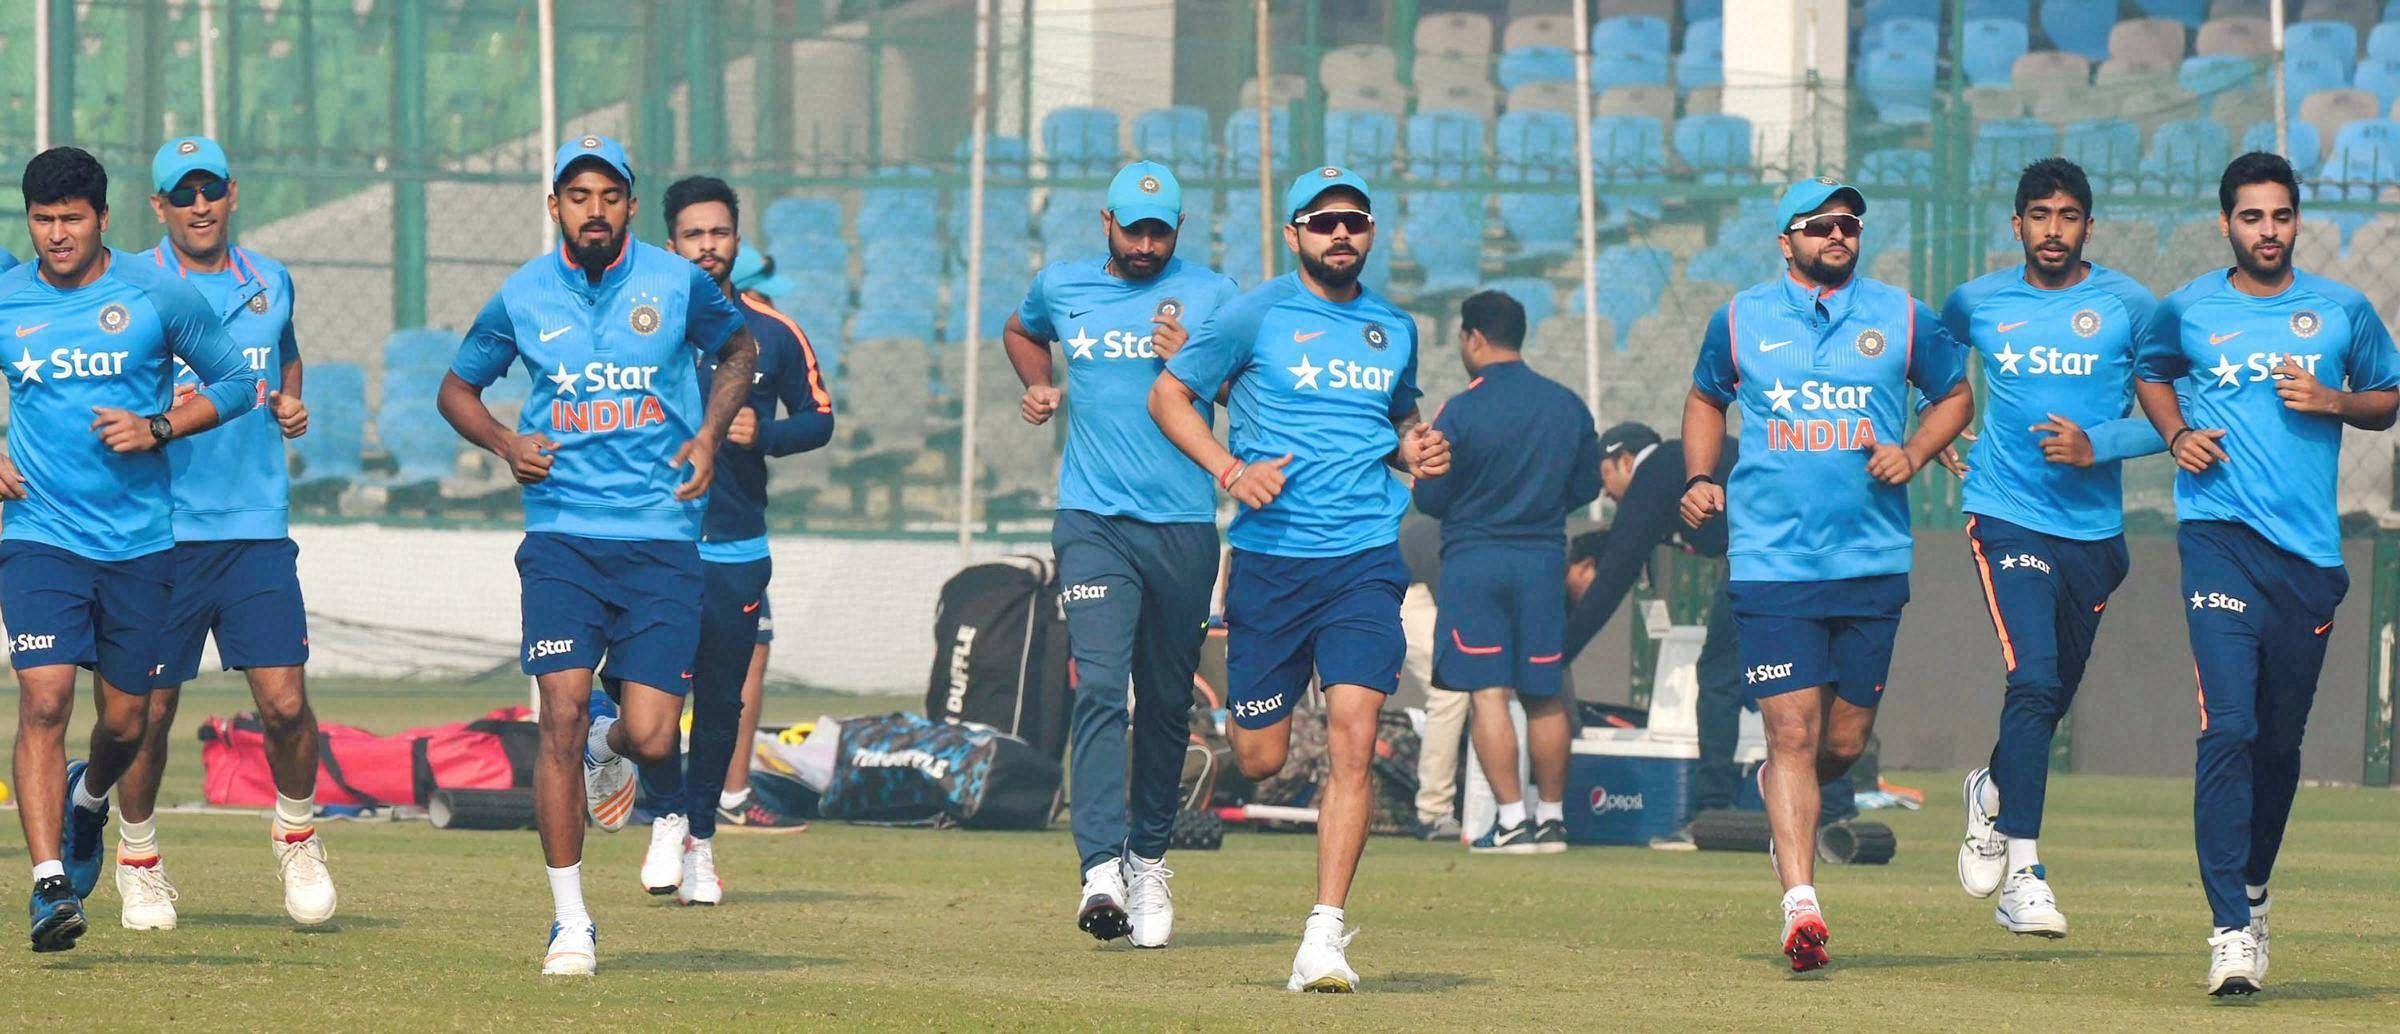 कानपुर के ग्रीन पार्क स्टेडियम में भारत इंग्लैंड पहला टी-20 मैच में विराट की निगाहें श्रृंखला पर और इयान की सम्मान  पर